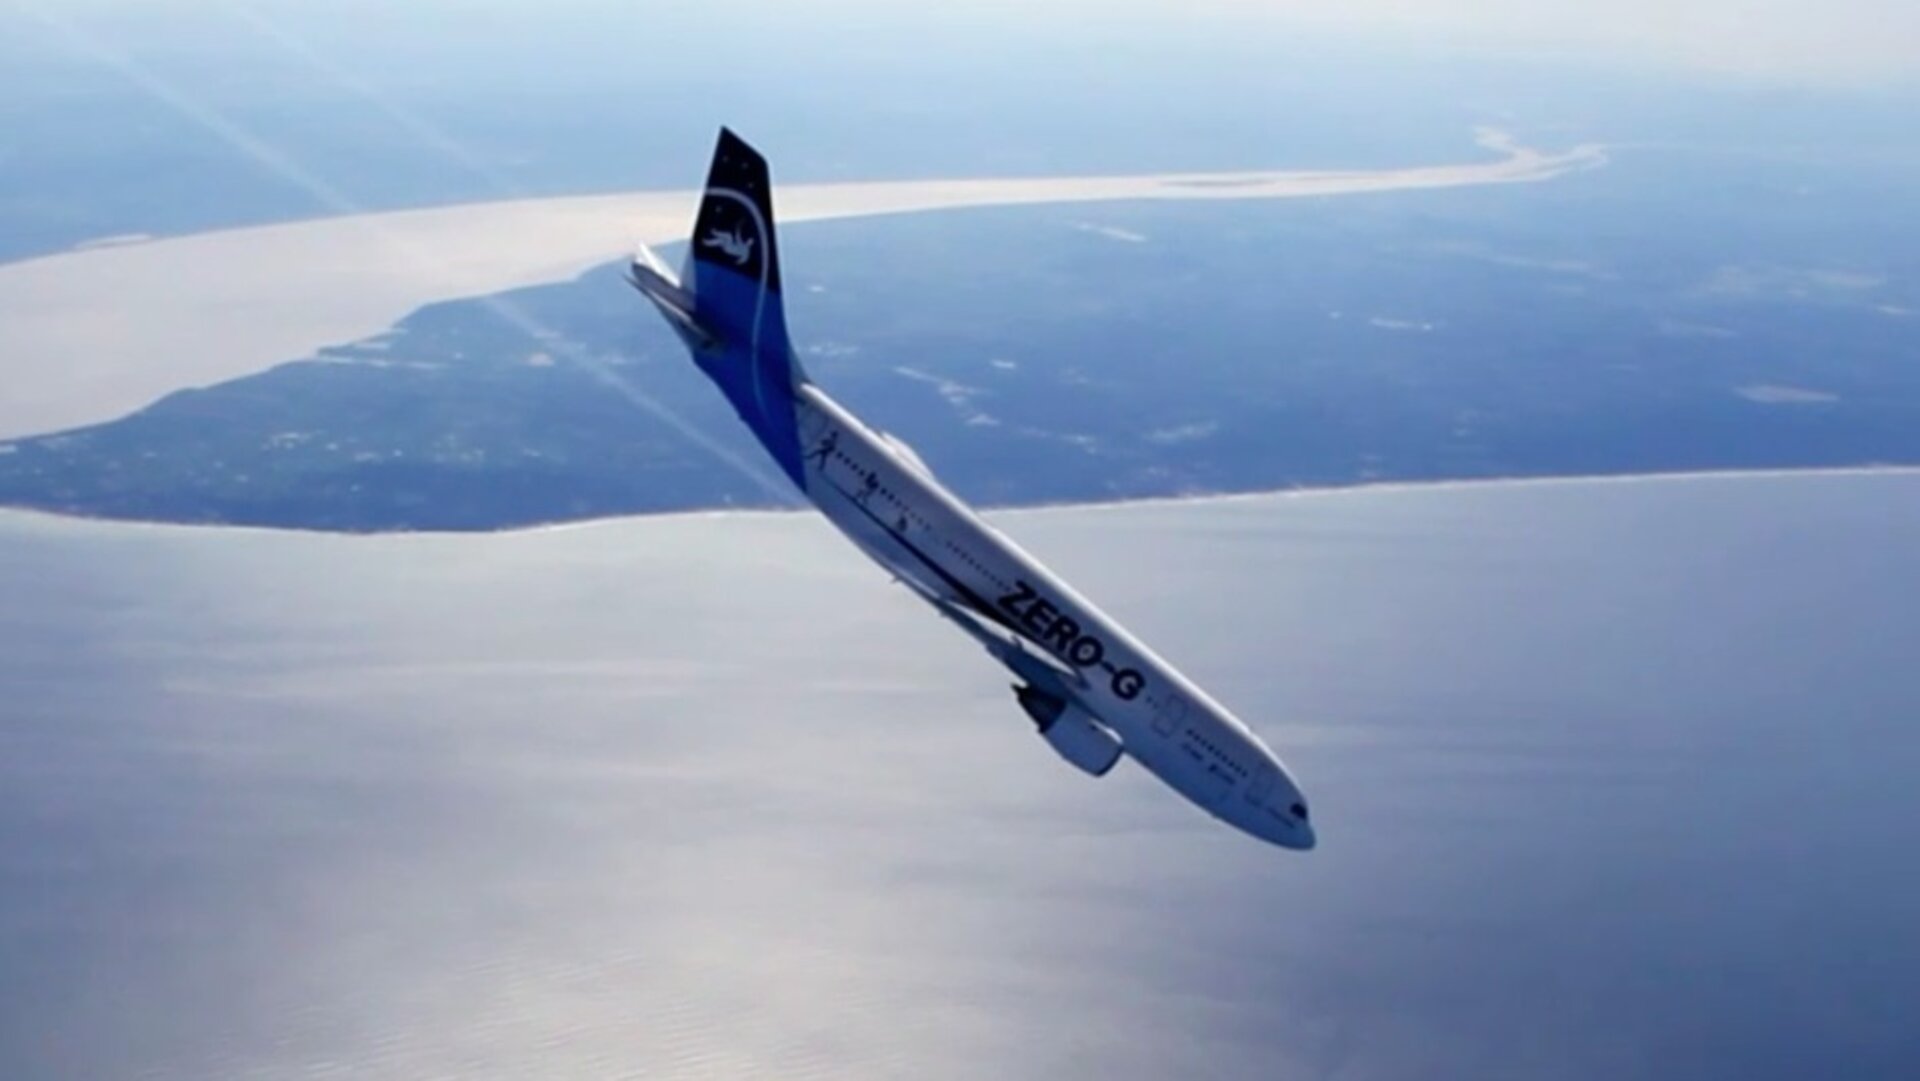 Zero-G Airbus A300 during parabolic flight descent